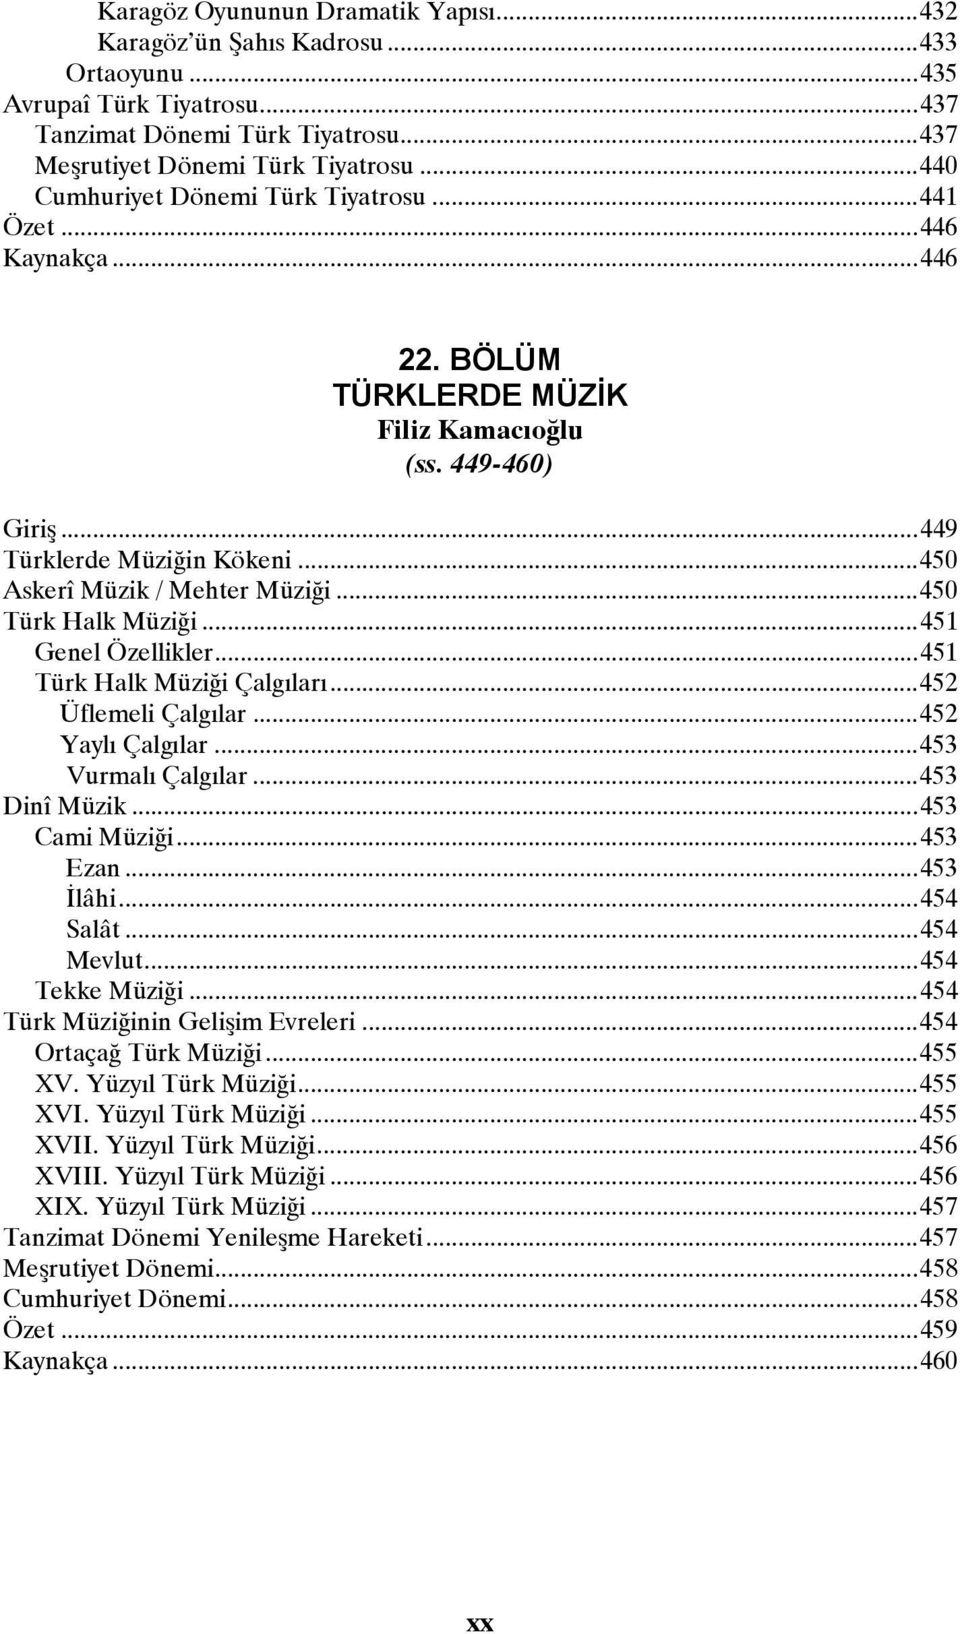 .. 450 Askerî Müzik / Mehter Müziği... 450 Türk Halk Müziği... 451 Genel Özellikler... 451 Türk Halk Müziği Çalgıları... 452 Üflemeli Çalgılar... 452 Yaylı Çalgılar... 453 Vurmalı Çalgılar.